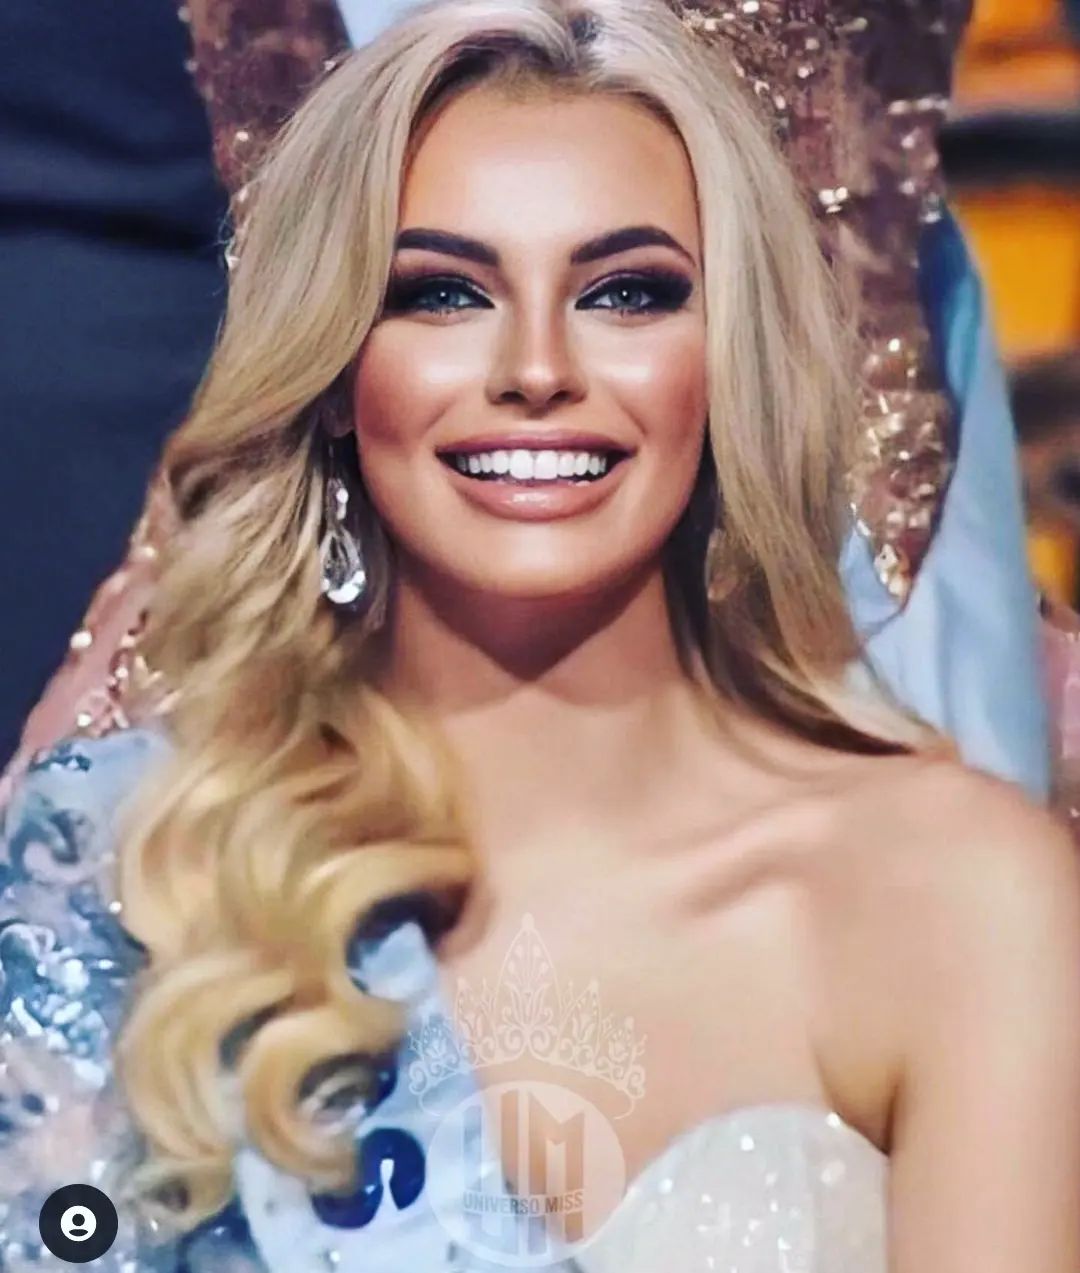 MissWorld - karolina bielawska, miss world 2021. 27166415